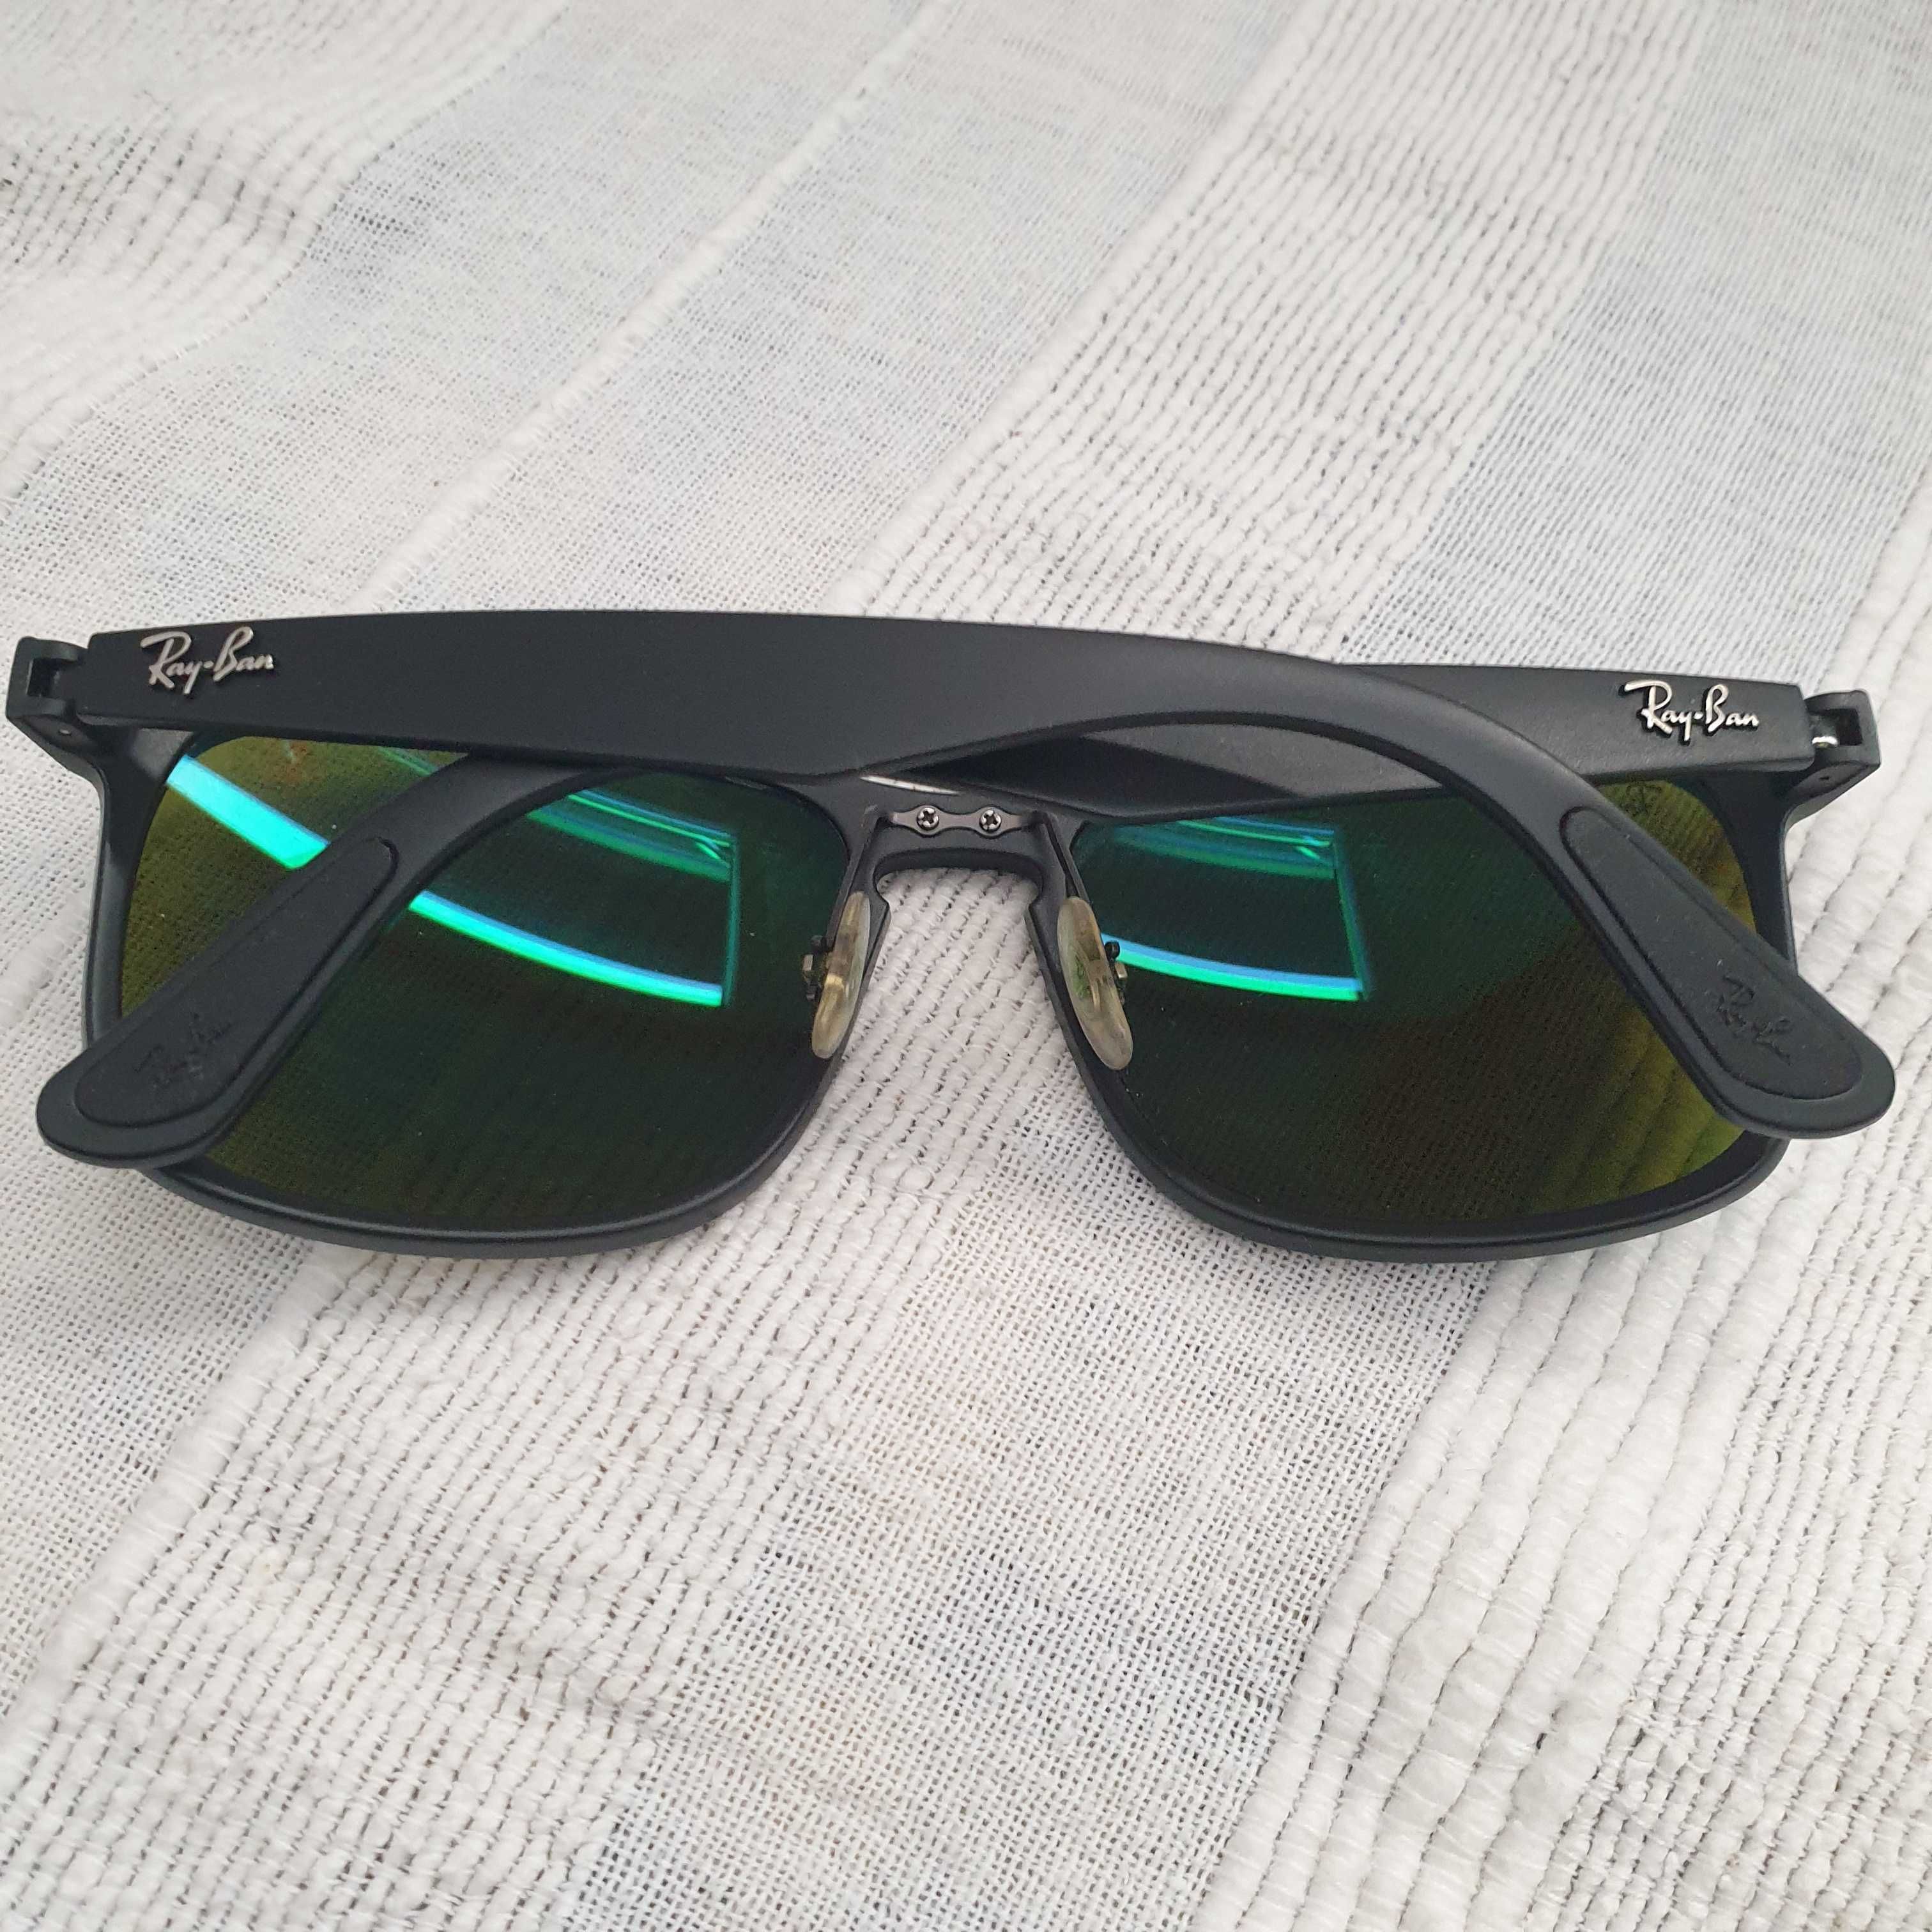 óculos Ray ban RB4264, original preto e azul impecável